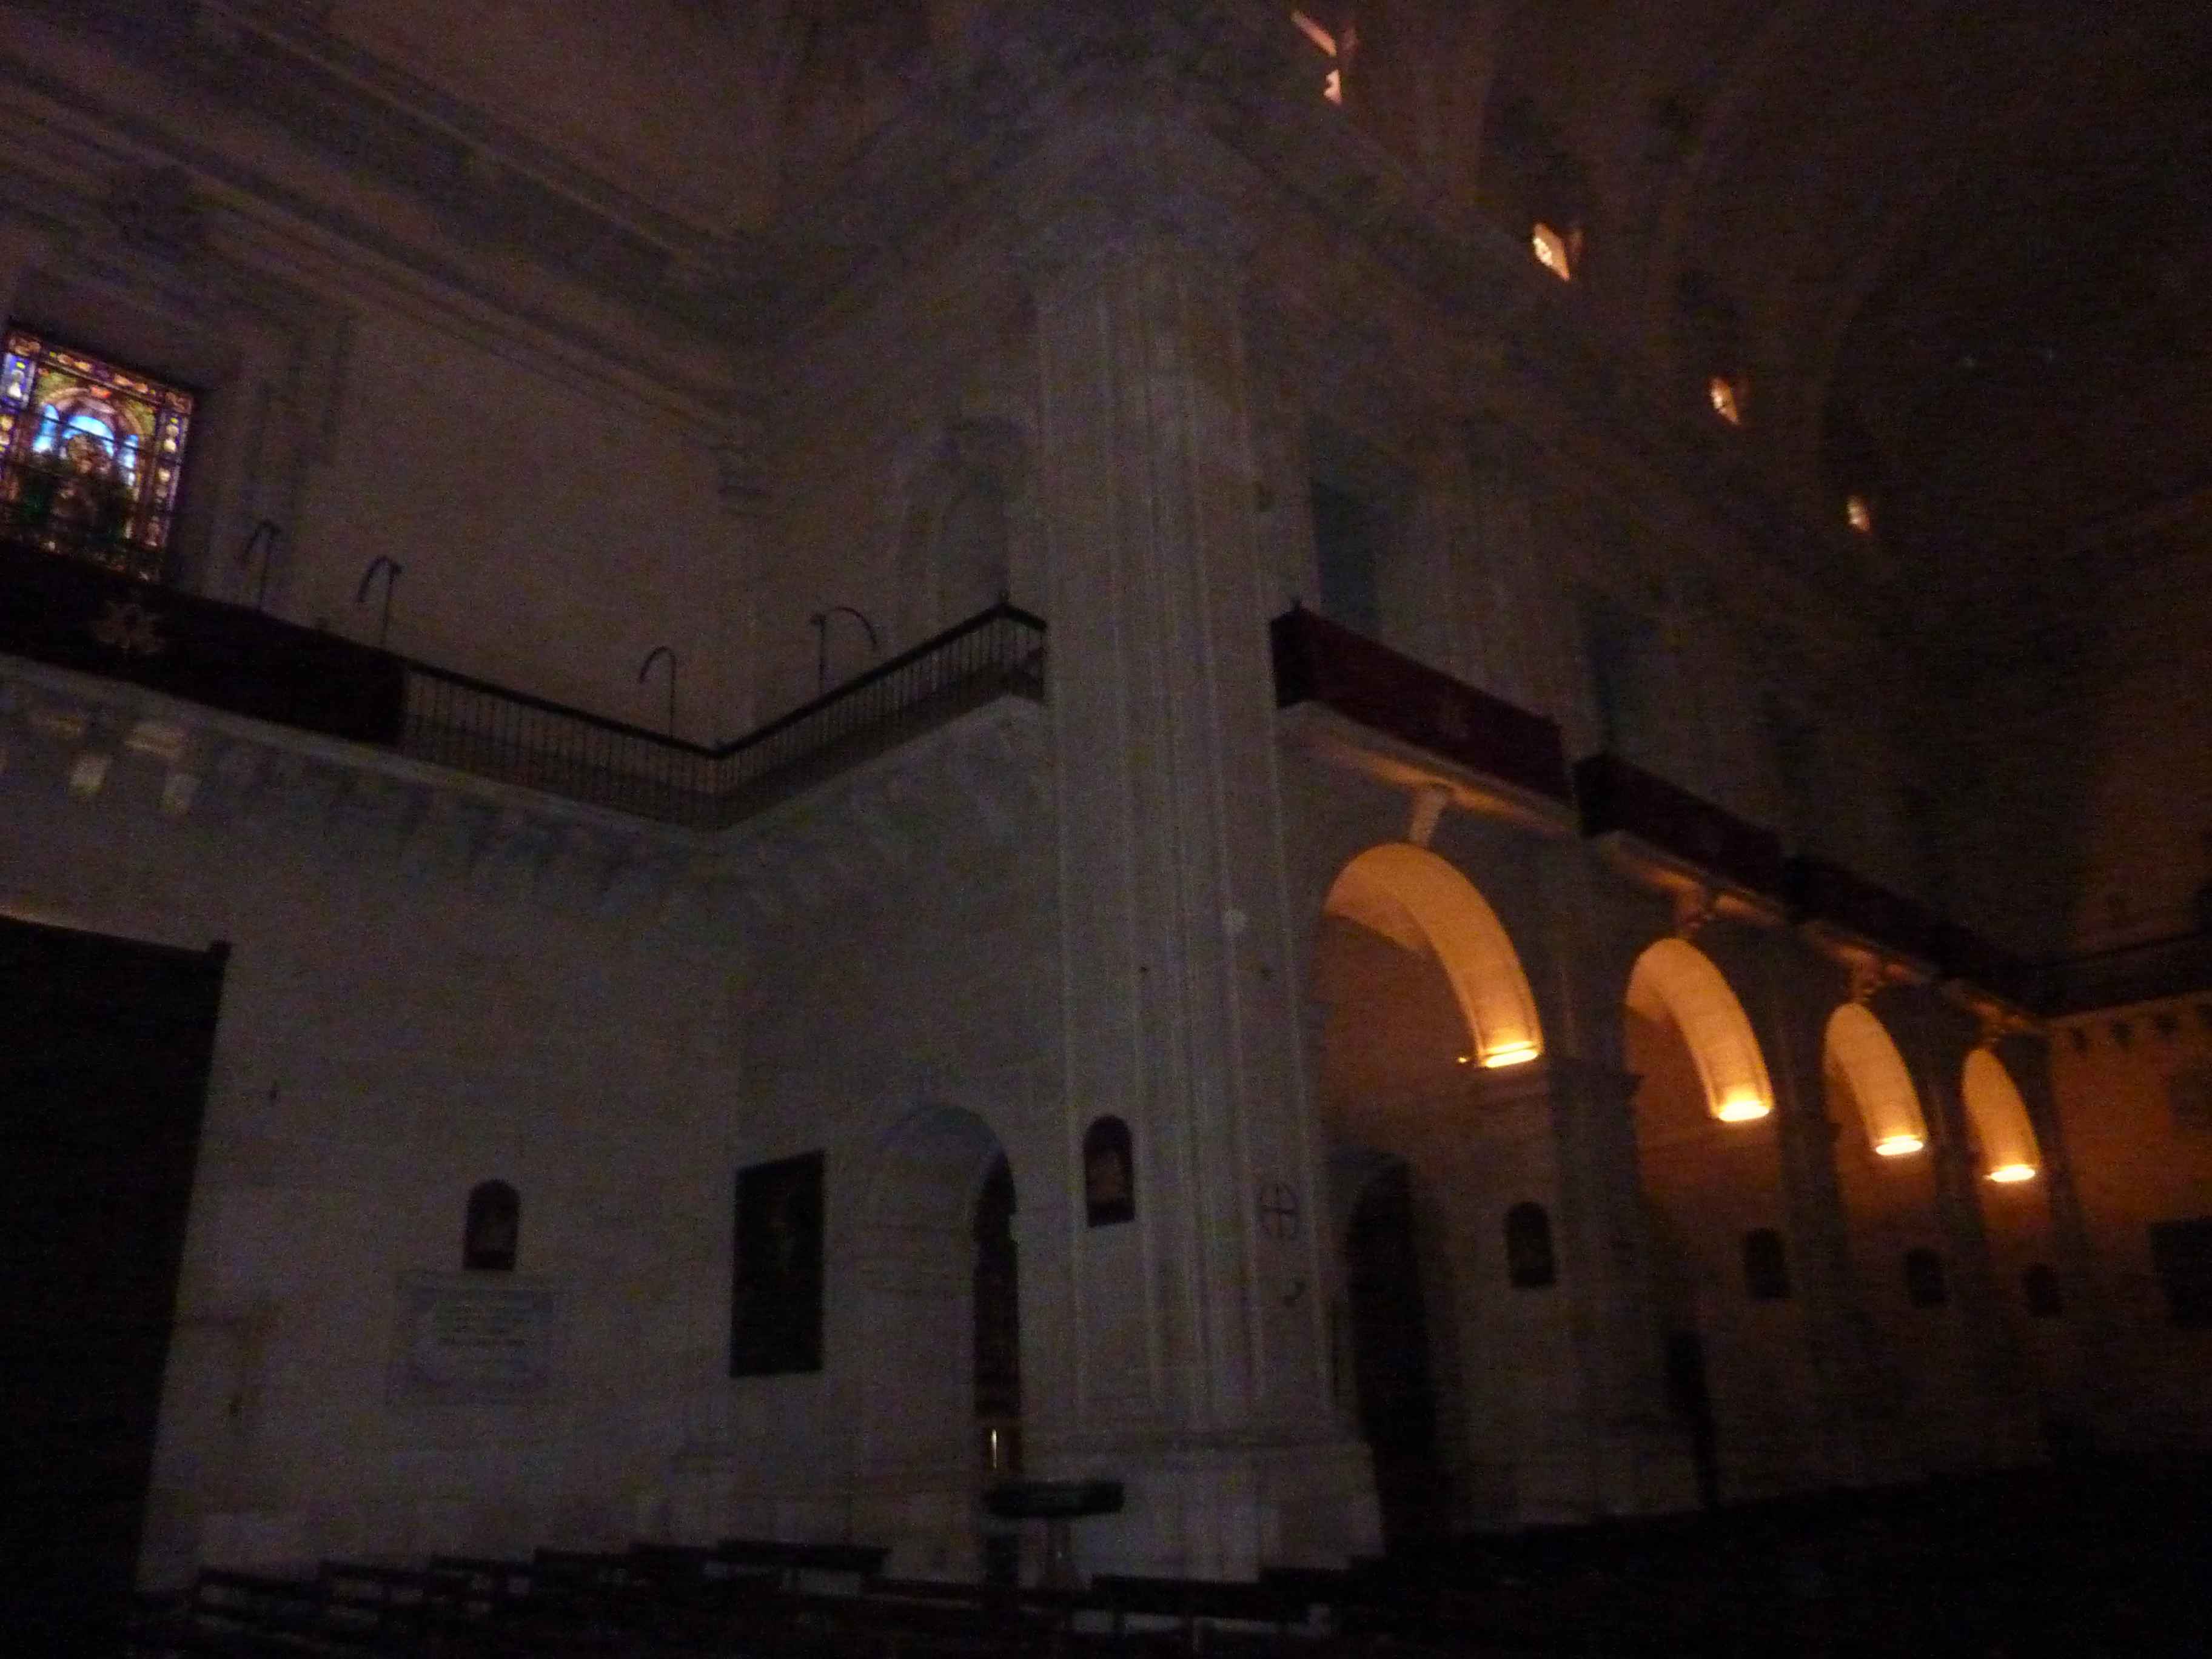 Interieur De La Basilique en Images